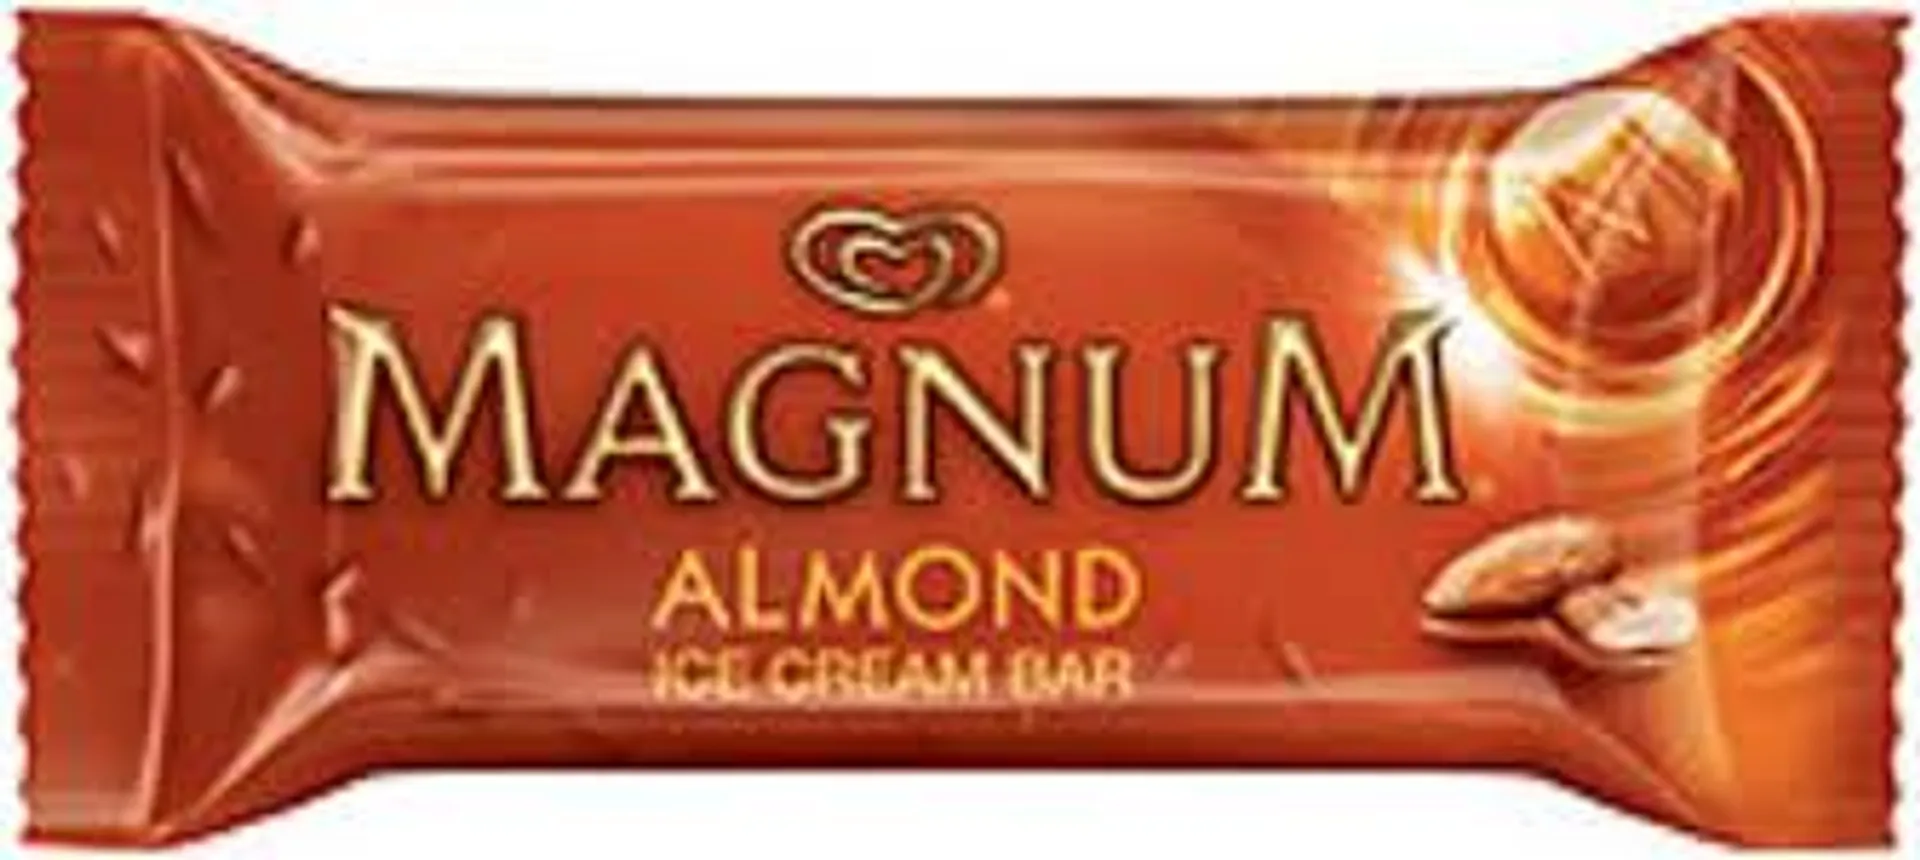 Magnum - Almond Ice Cream Bar 3.38 Oz